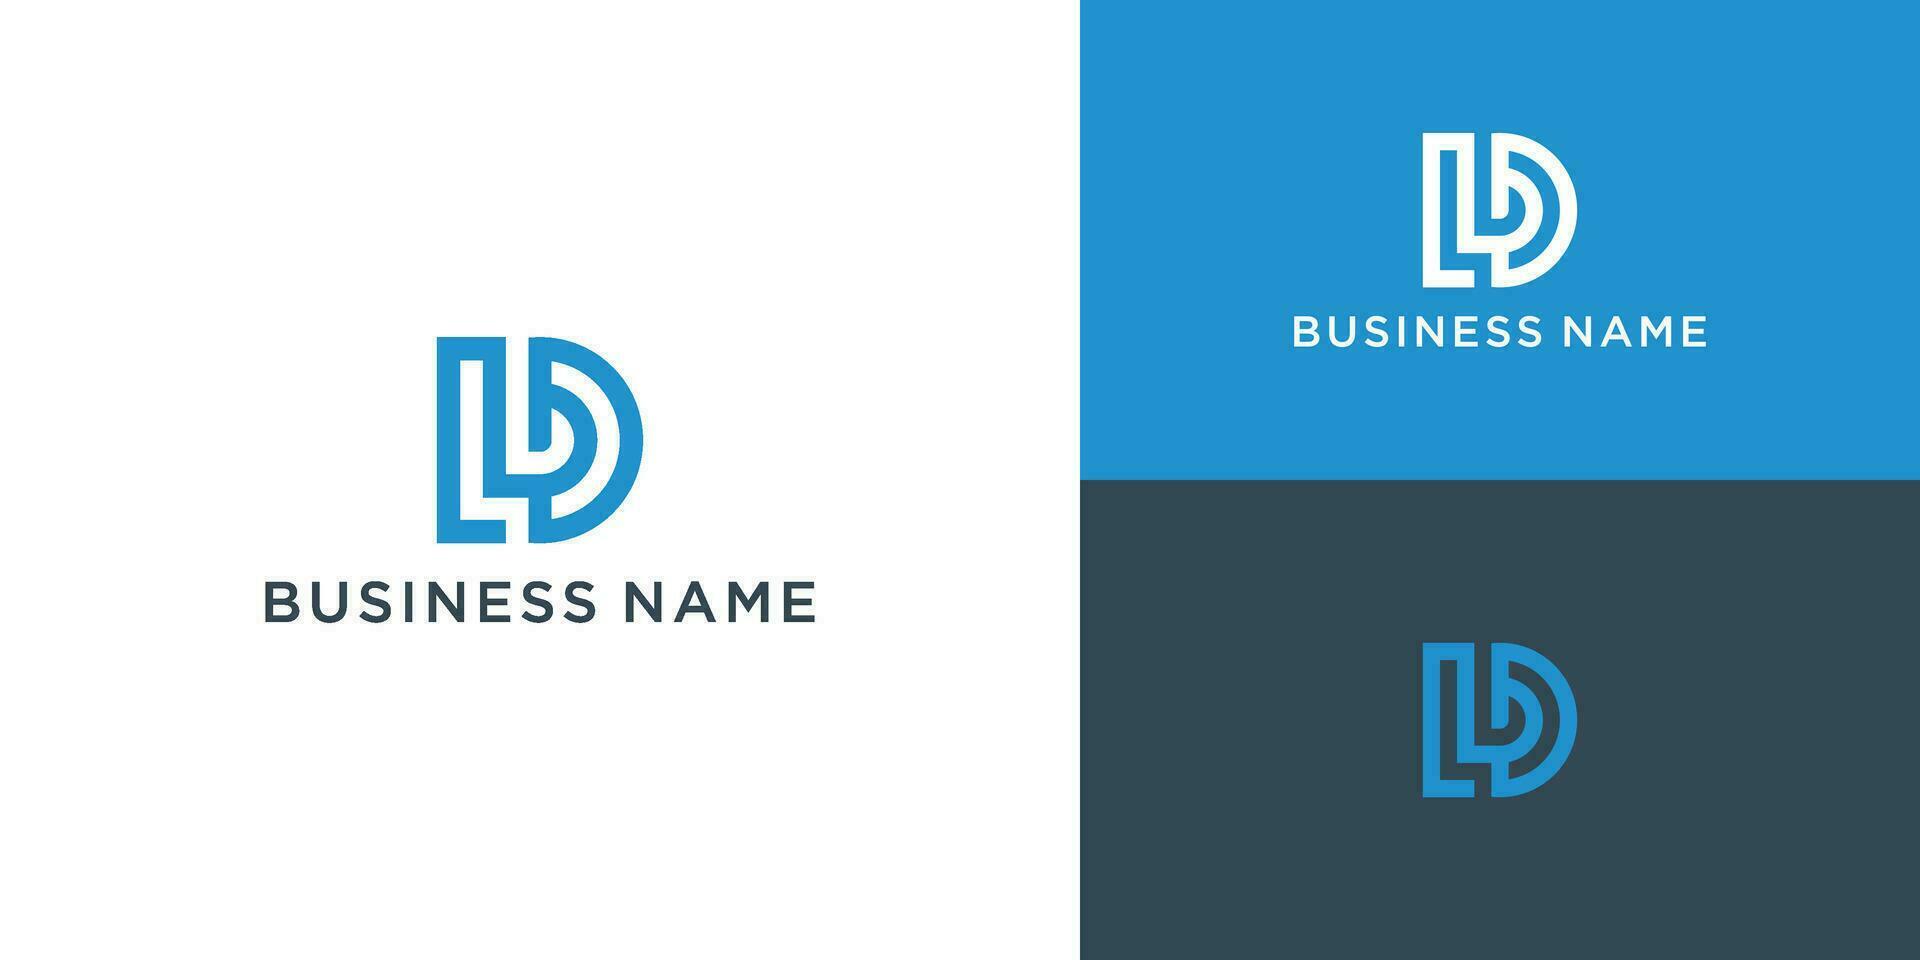 D,L vector logo. DL logo. Business logo. D,L letters monogram